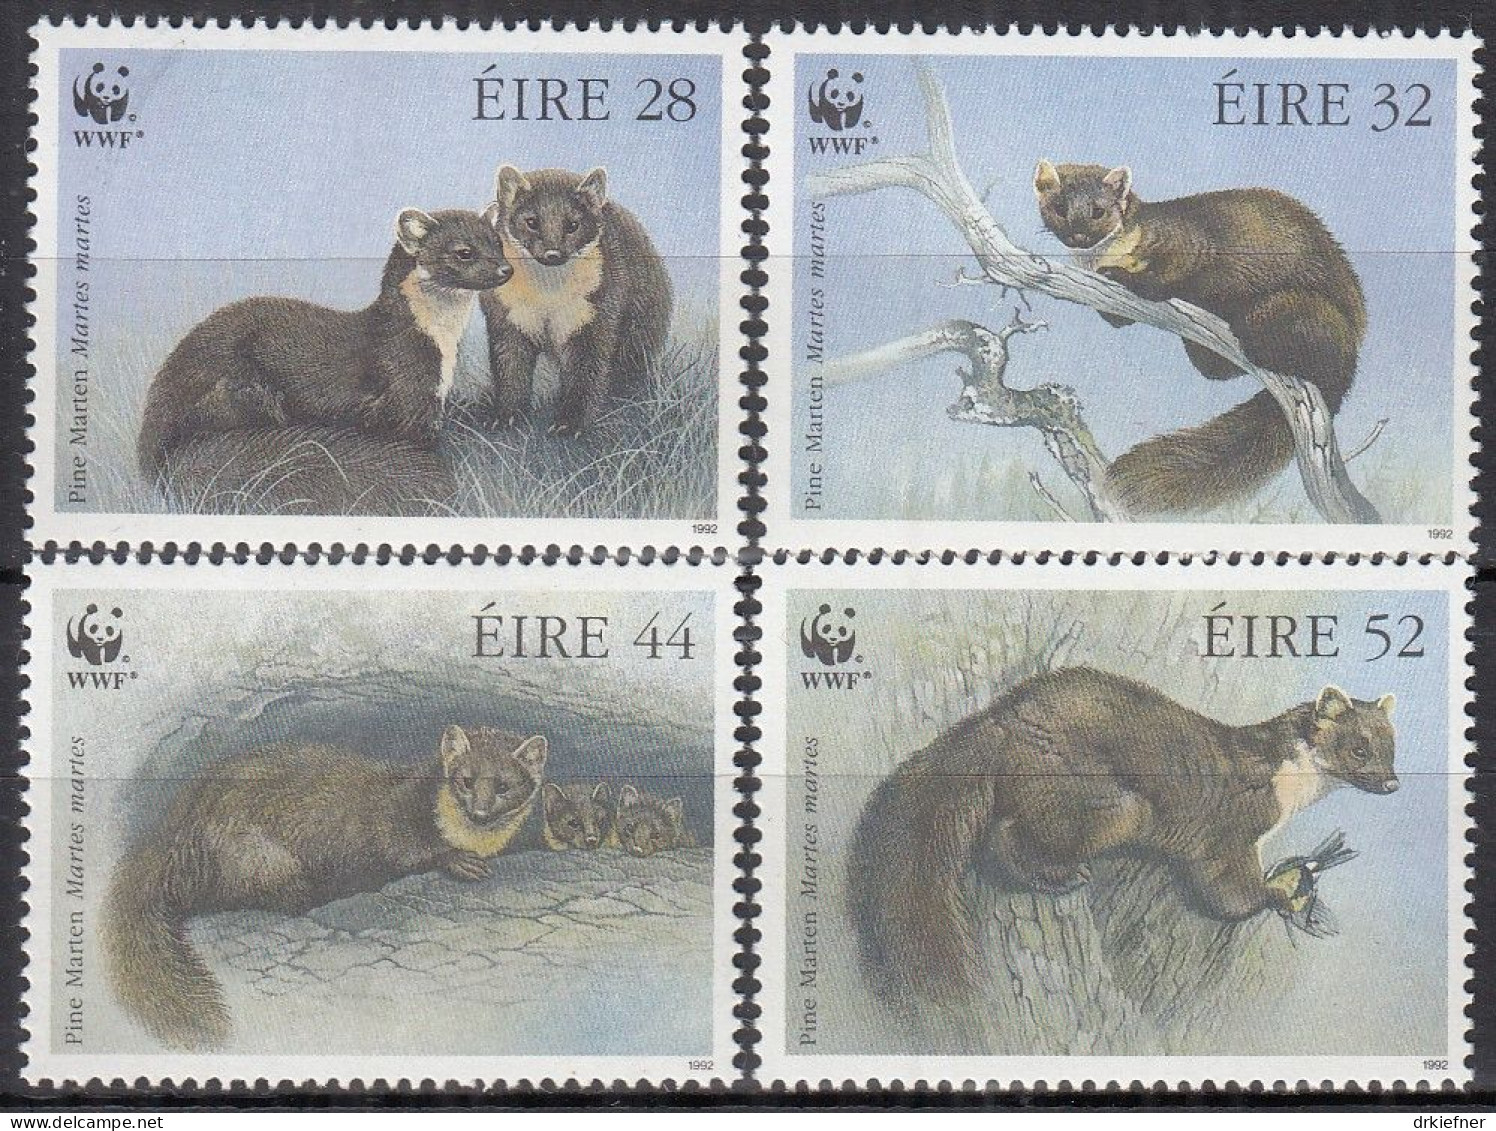 IRLAND  798-801, Postfrisch **, WWF, Weltweiter Naturschutz: Baummarder, 1992 - Unused Stamps